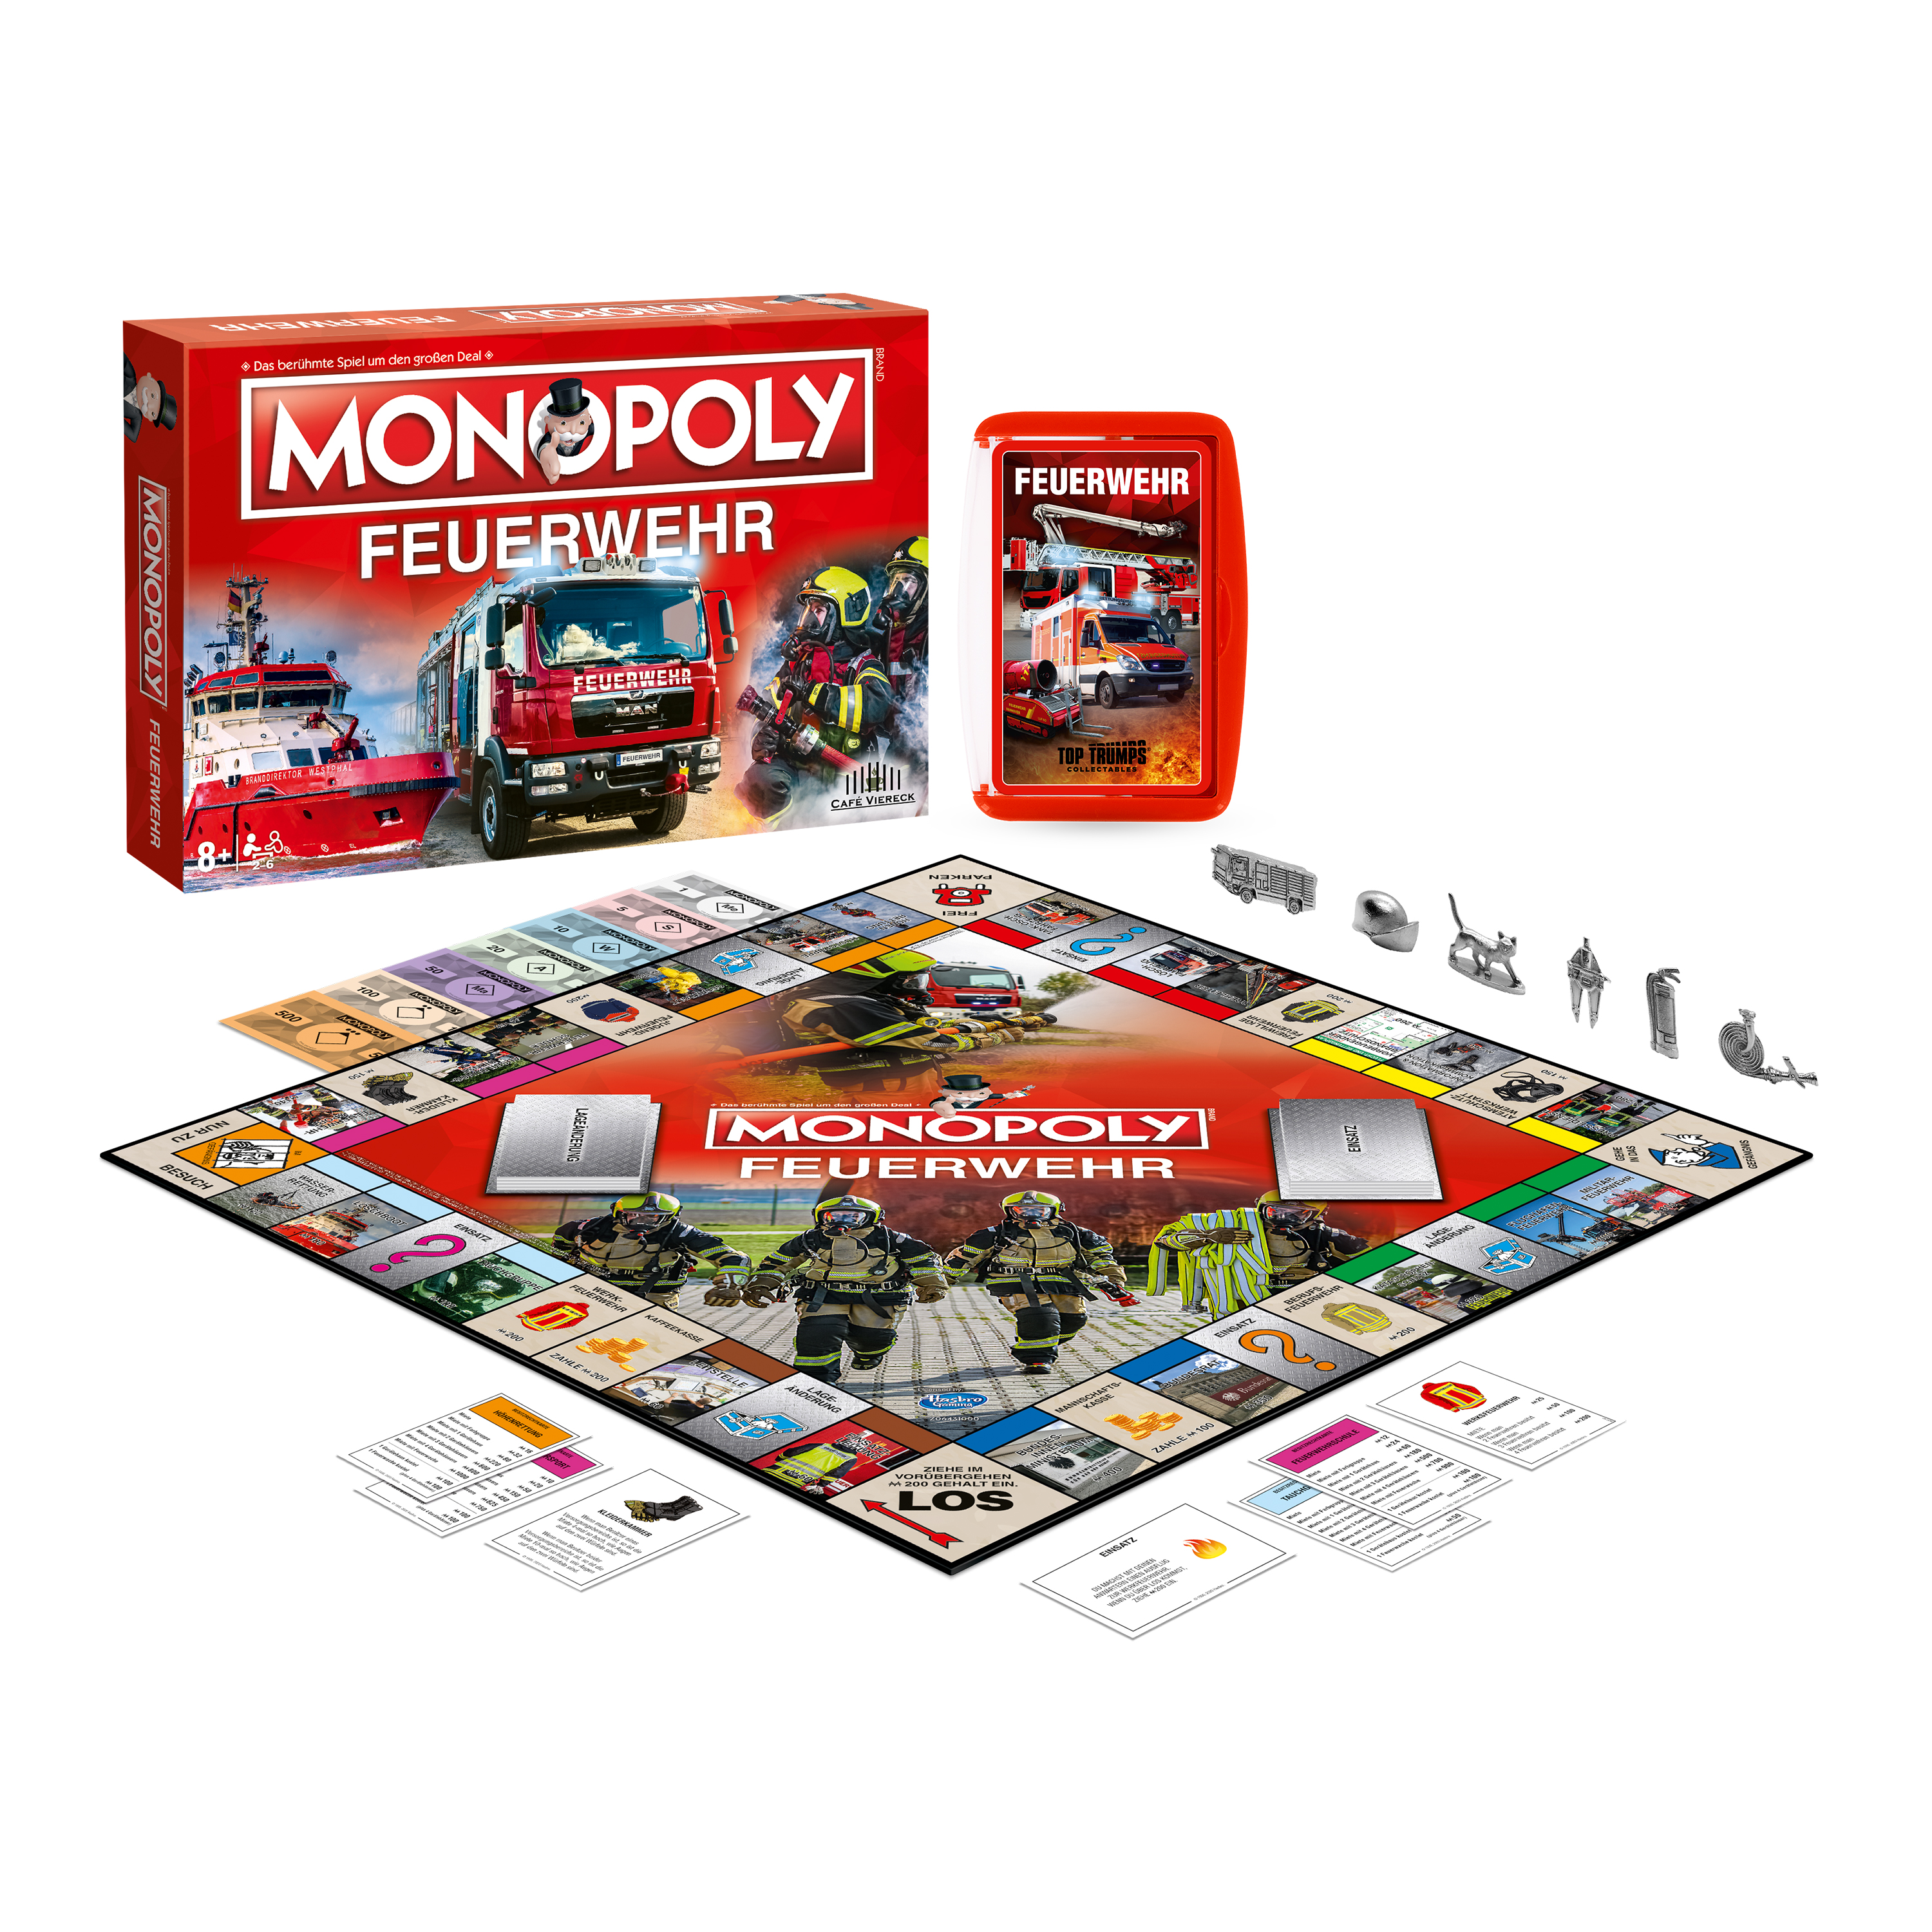 Monopoly Feuerwehr